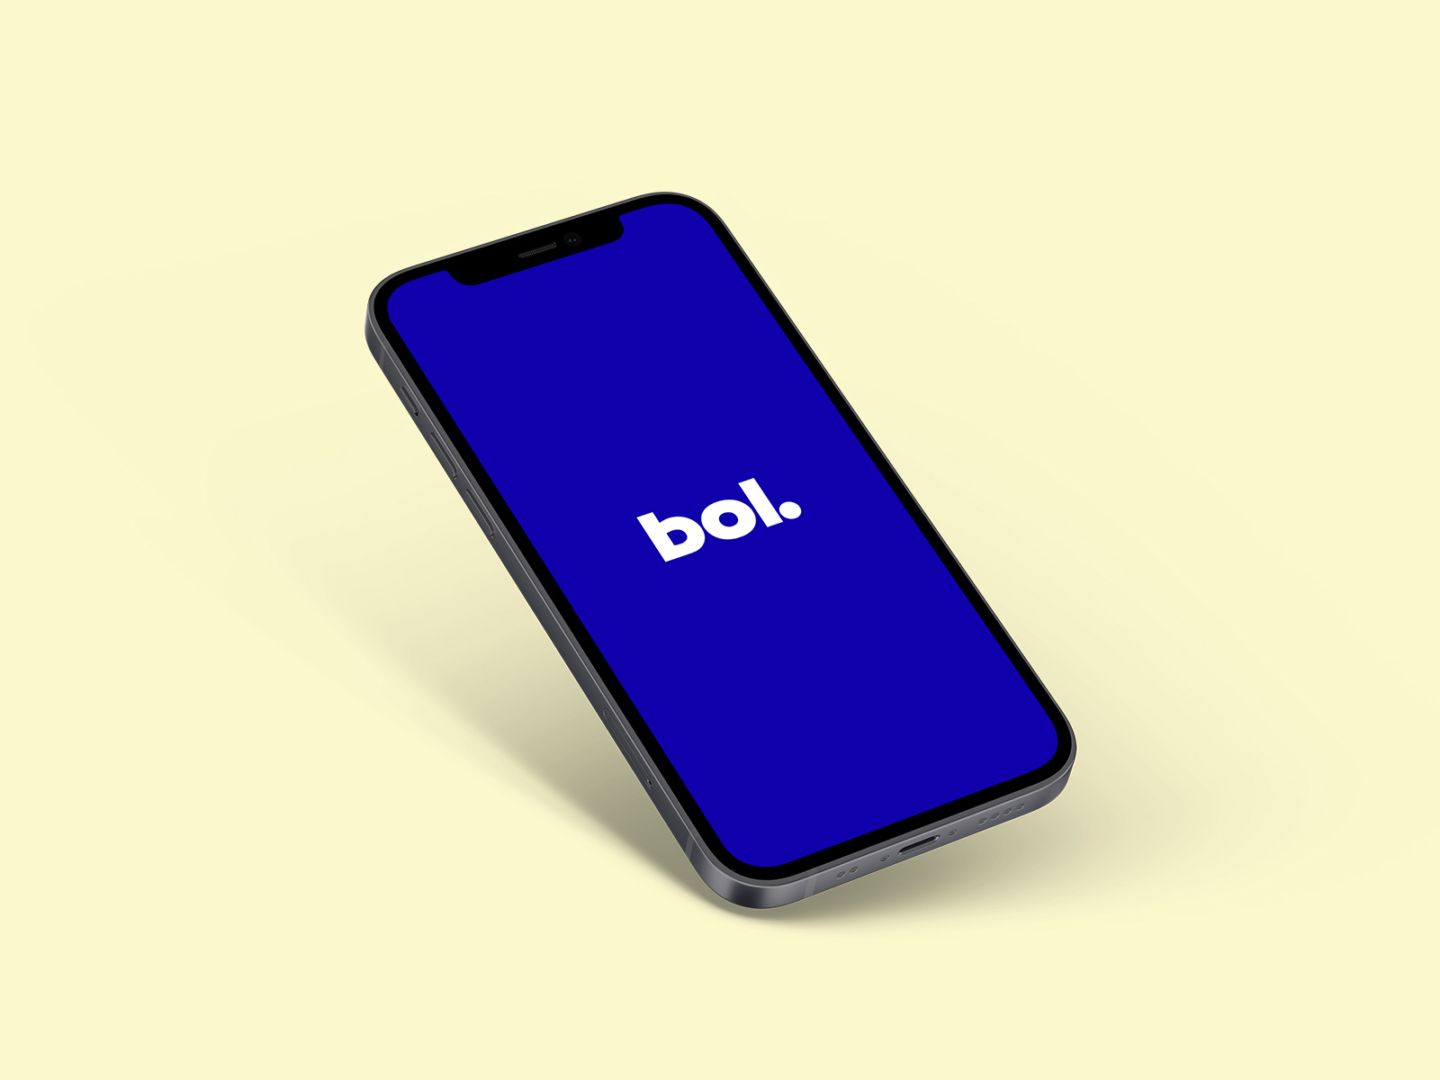 Bol7daagse_Q1-_b7d_app_editorial-1600x1200.jpg